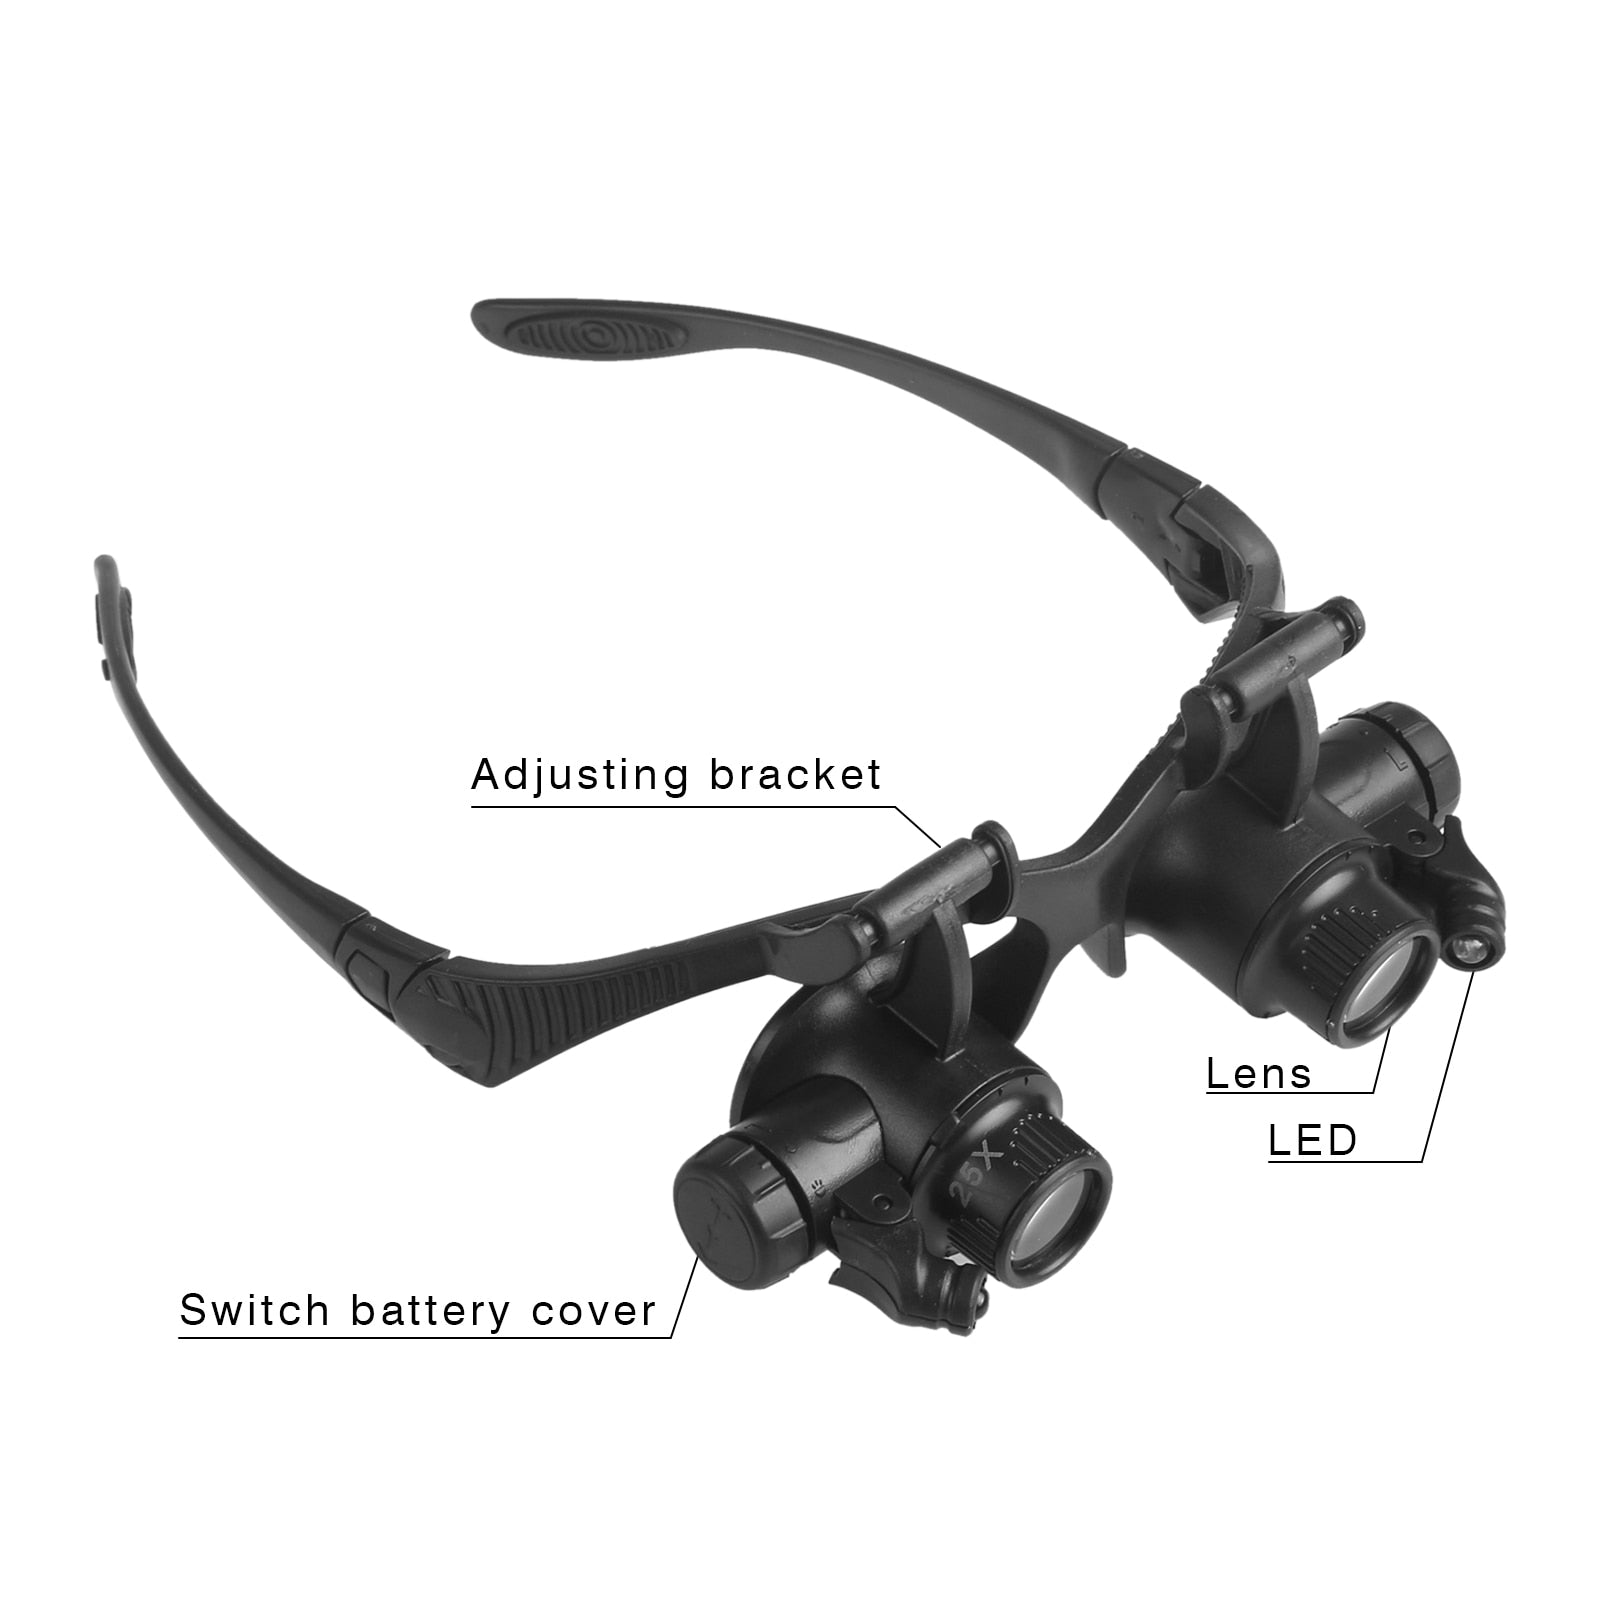 Magnifying Eyeglasses Lights - Adjustable 2 Lens Loupe Led Light